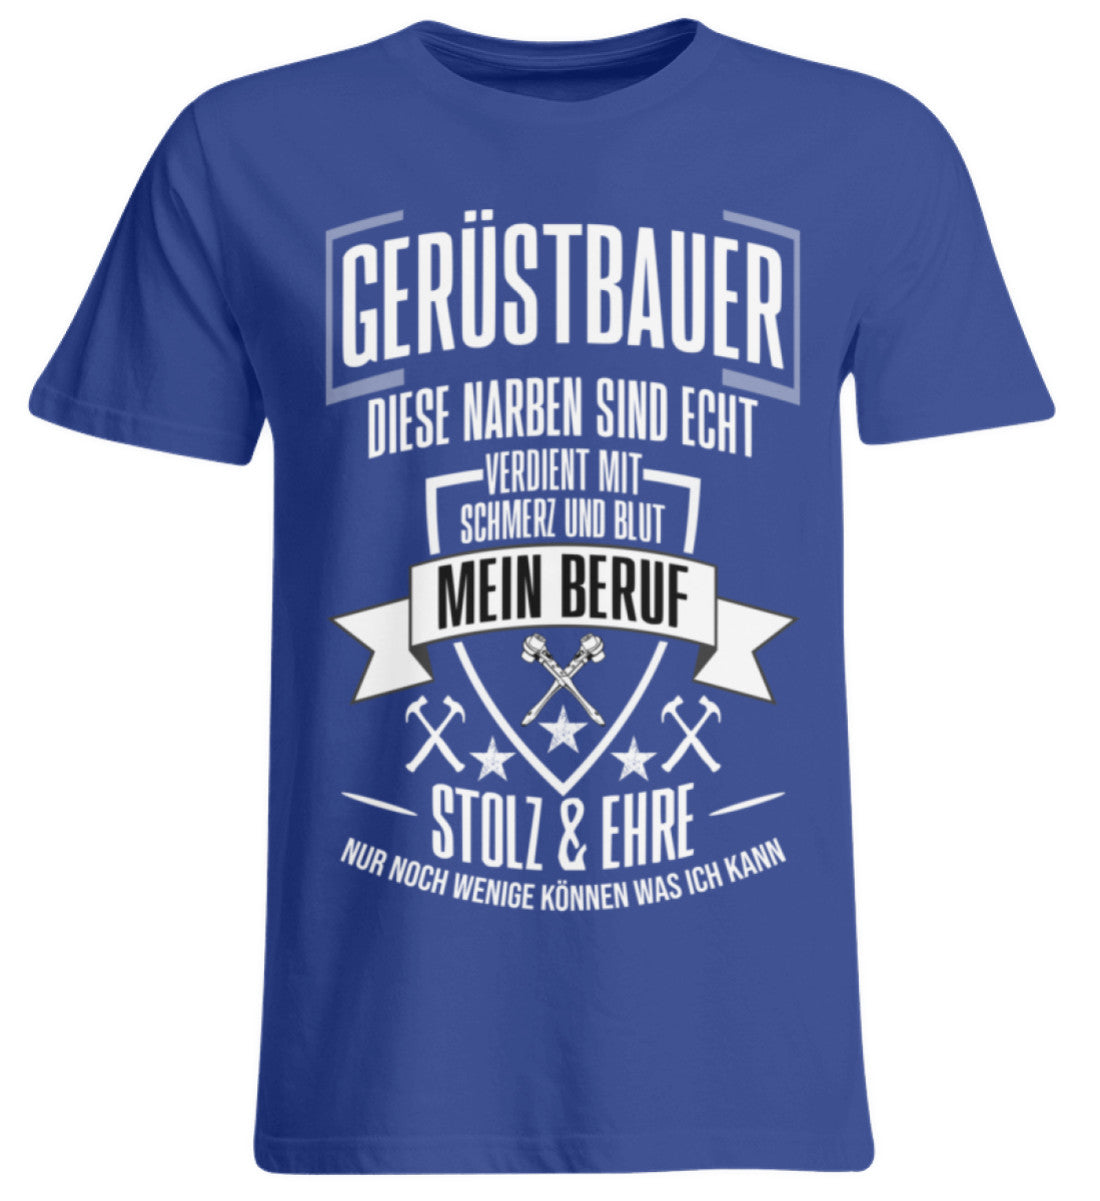 Gerüstbauer / MEIN BERUF  - Übergrößenshirt €24.95 Gerüstbauer - Shop >>